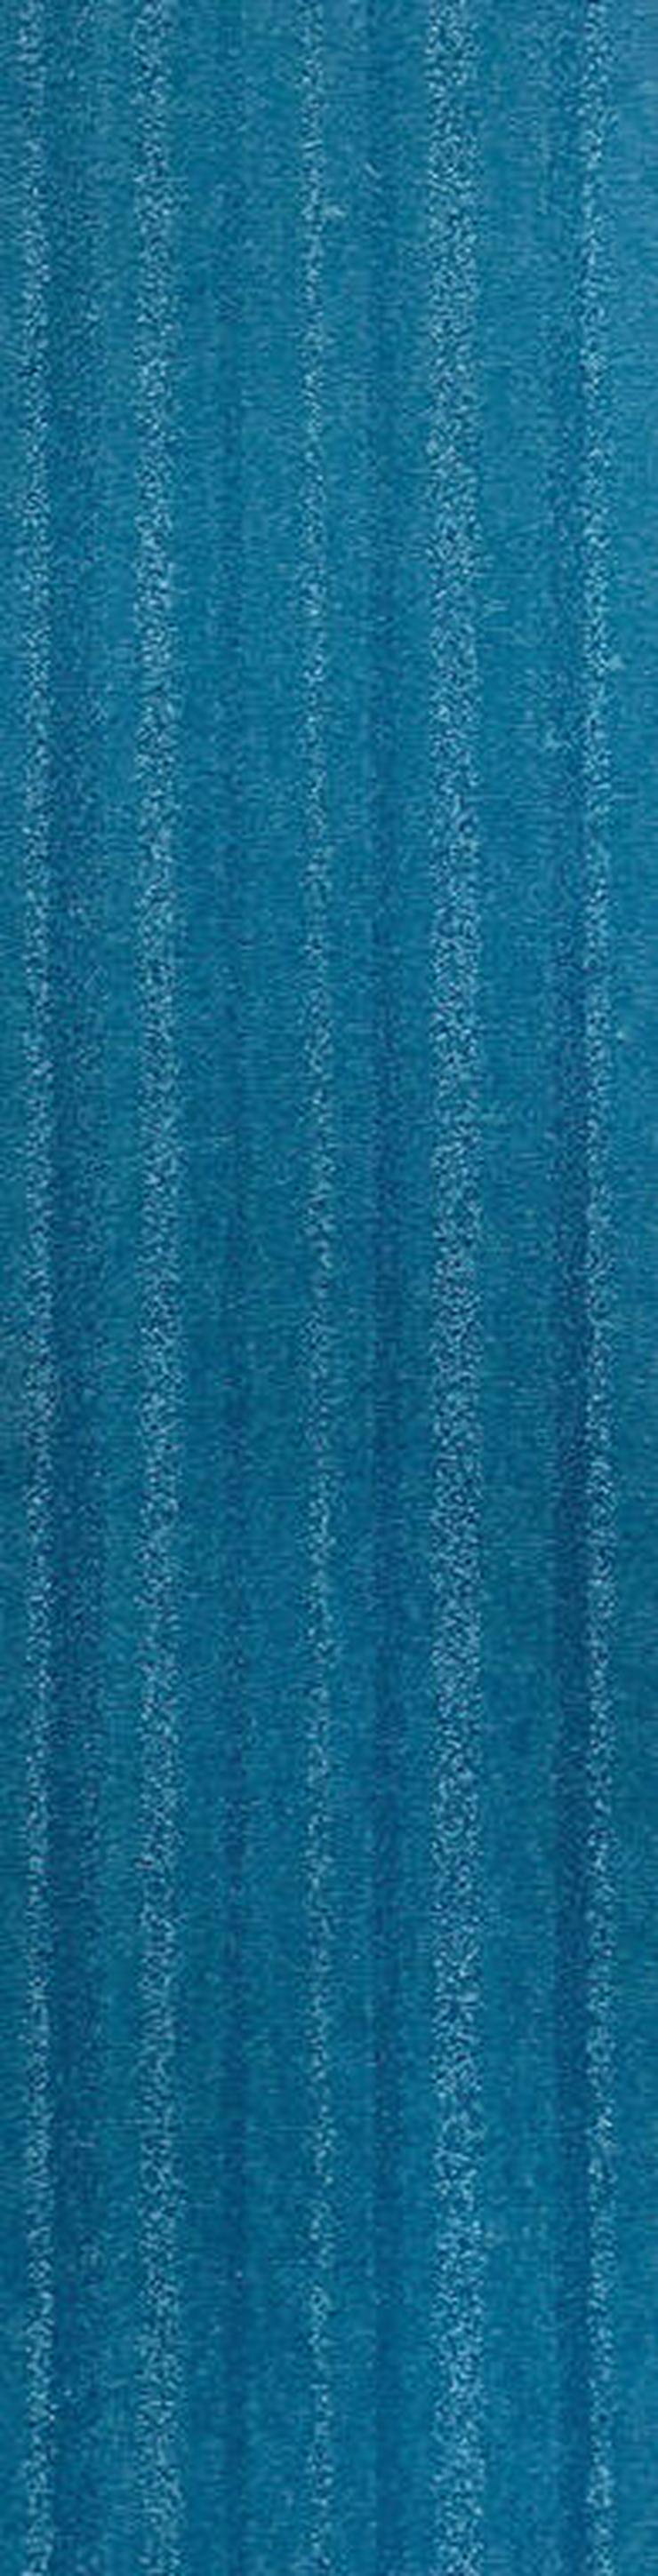 Bild 3: Günstige Menge blauer Teppichfliesen 25x100cm Neu